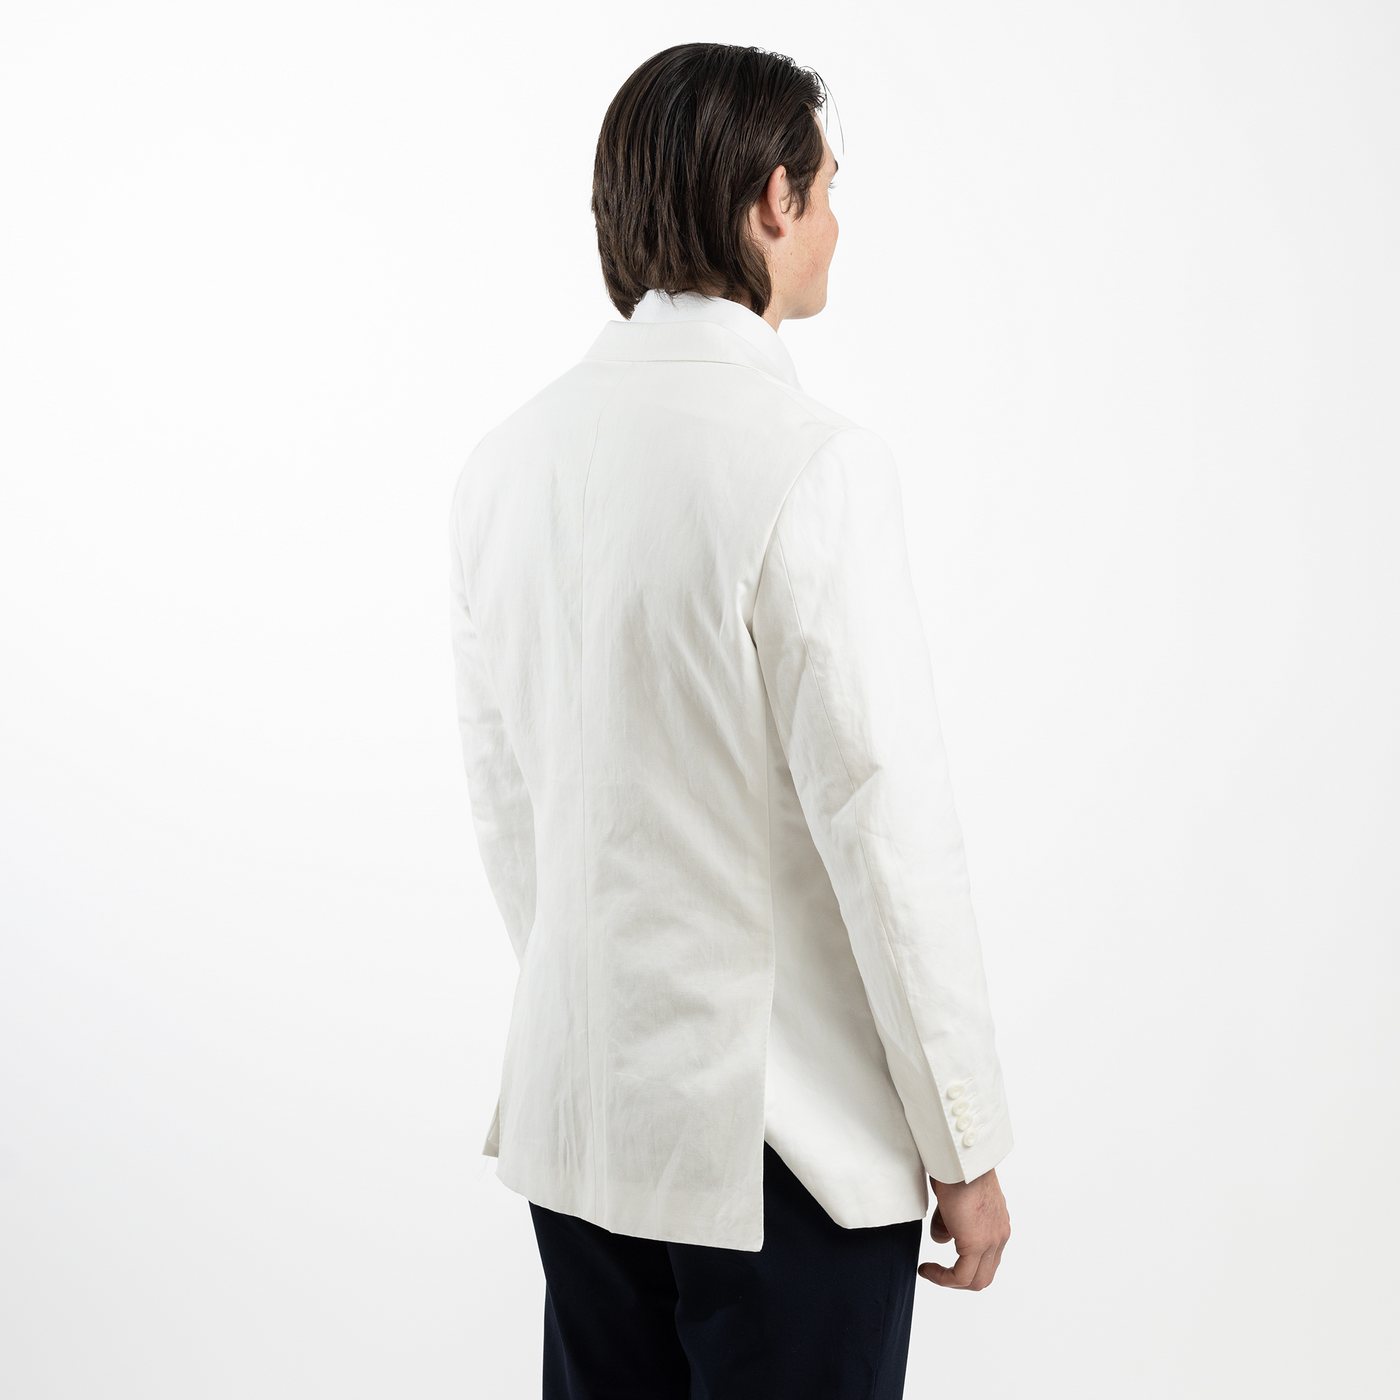 Custom Men's White Linen Jacket